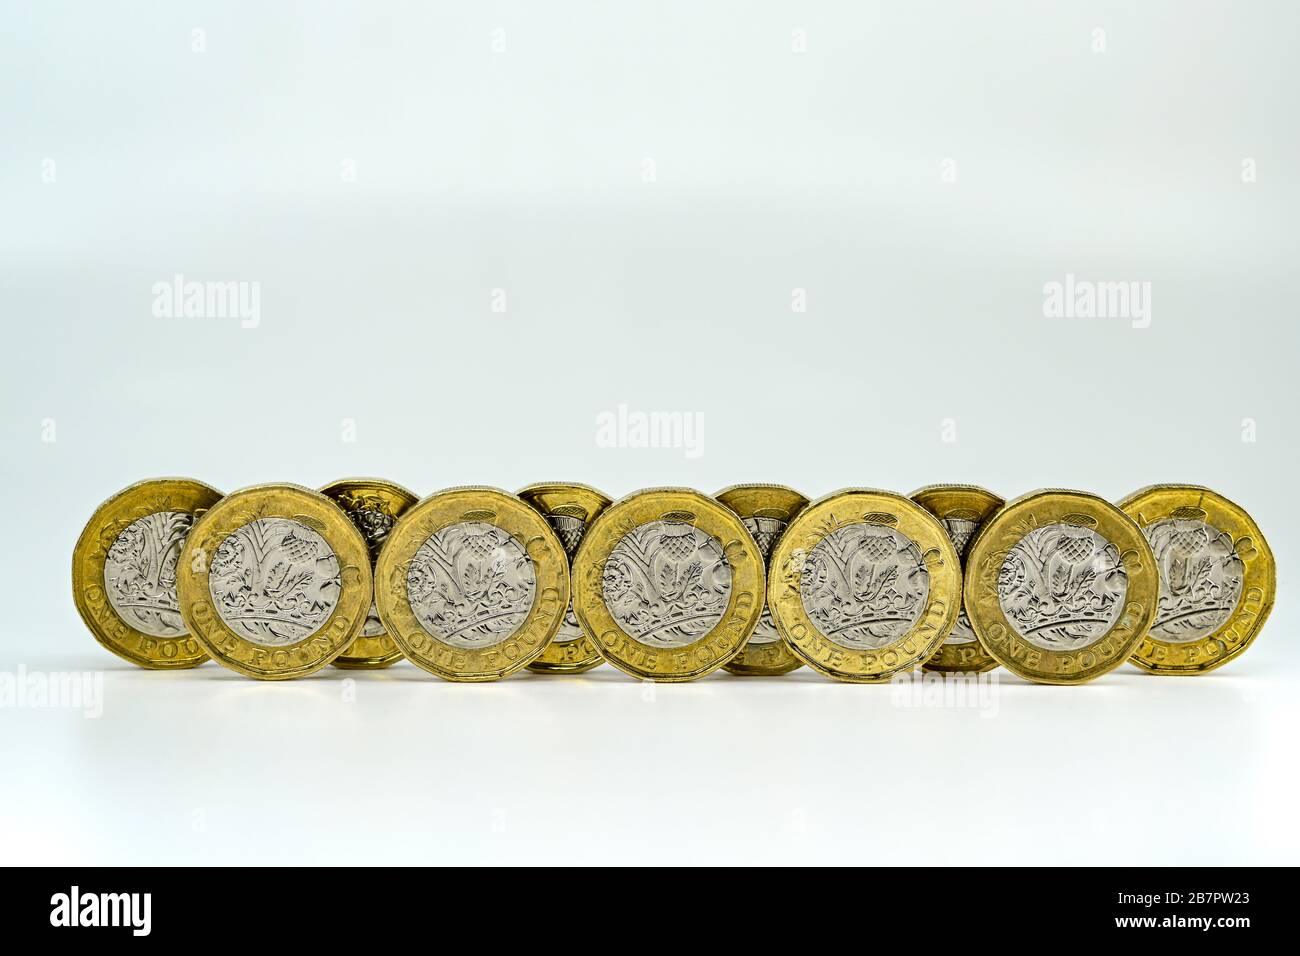 CARDIFF, WALES - JANUAR 2020: Nahaufnahme der britischen Währung GBP - One Pound Coins auf einem einfarbigen weißen Hintergrund Stockfoto